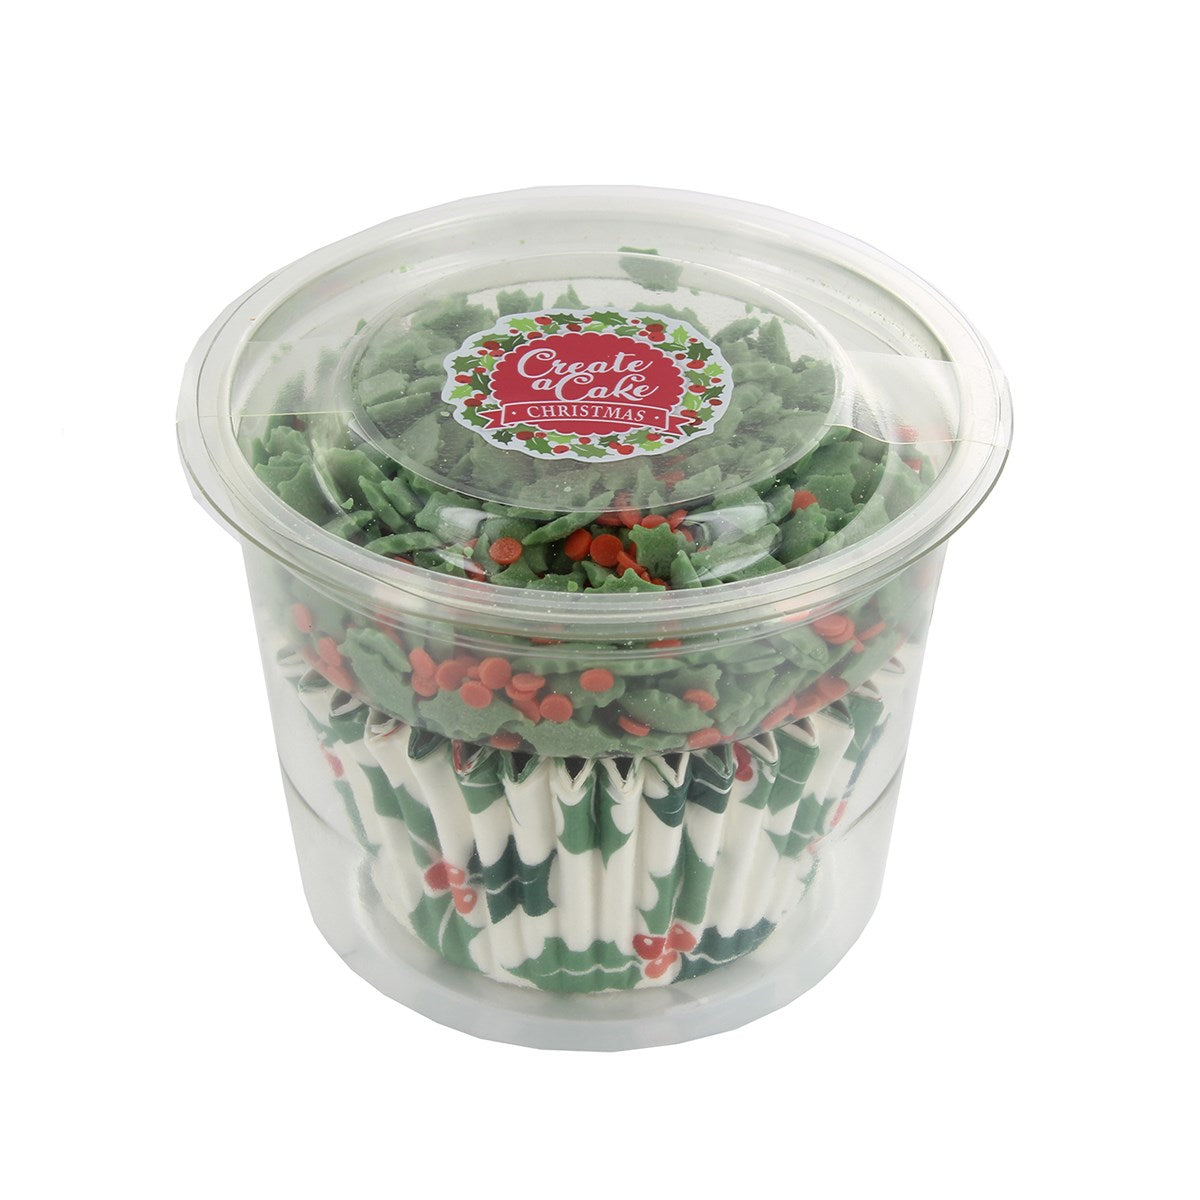 Holly & Berries Christmas Cupcake Baking Cases & Edible Sprinkles